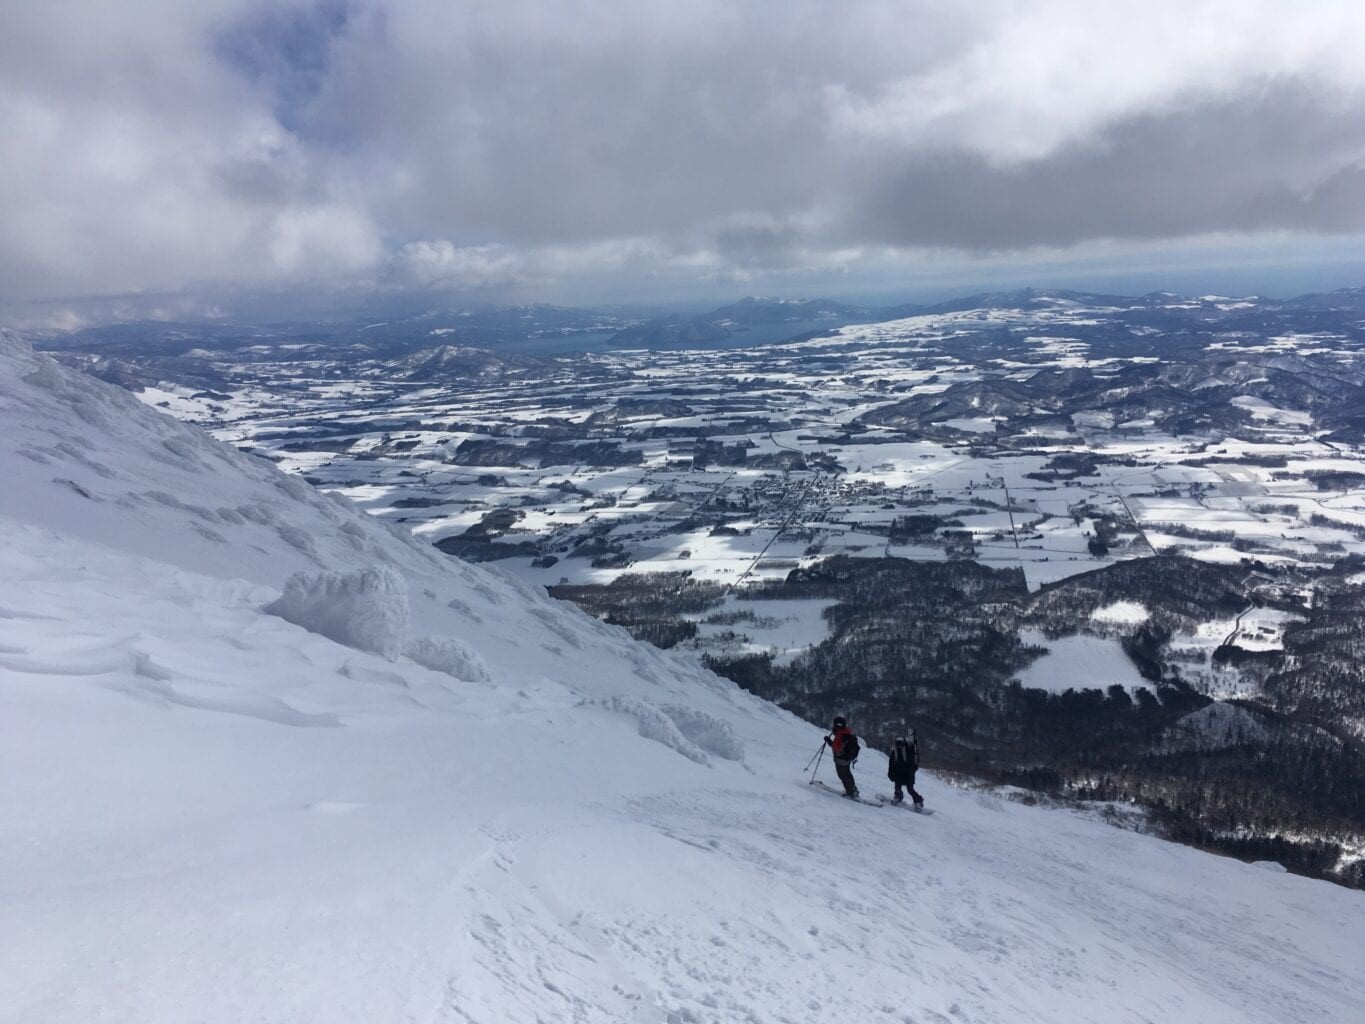 Skiing down Mt Yotei